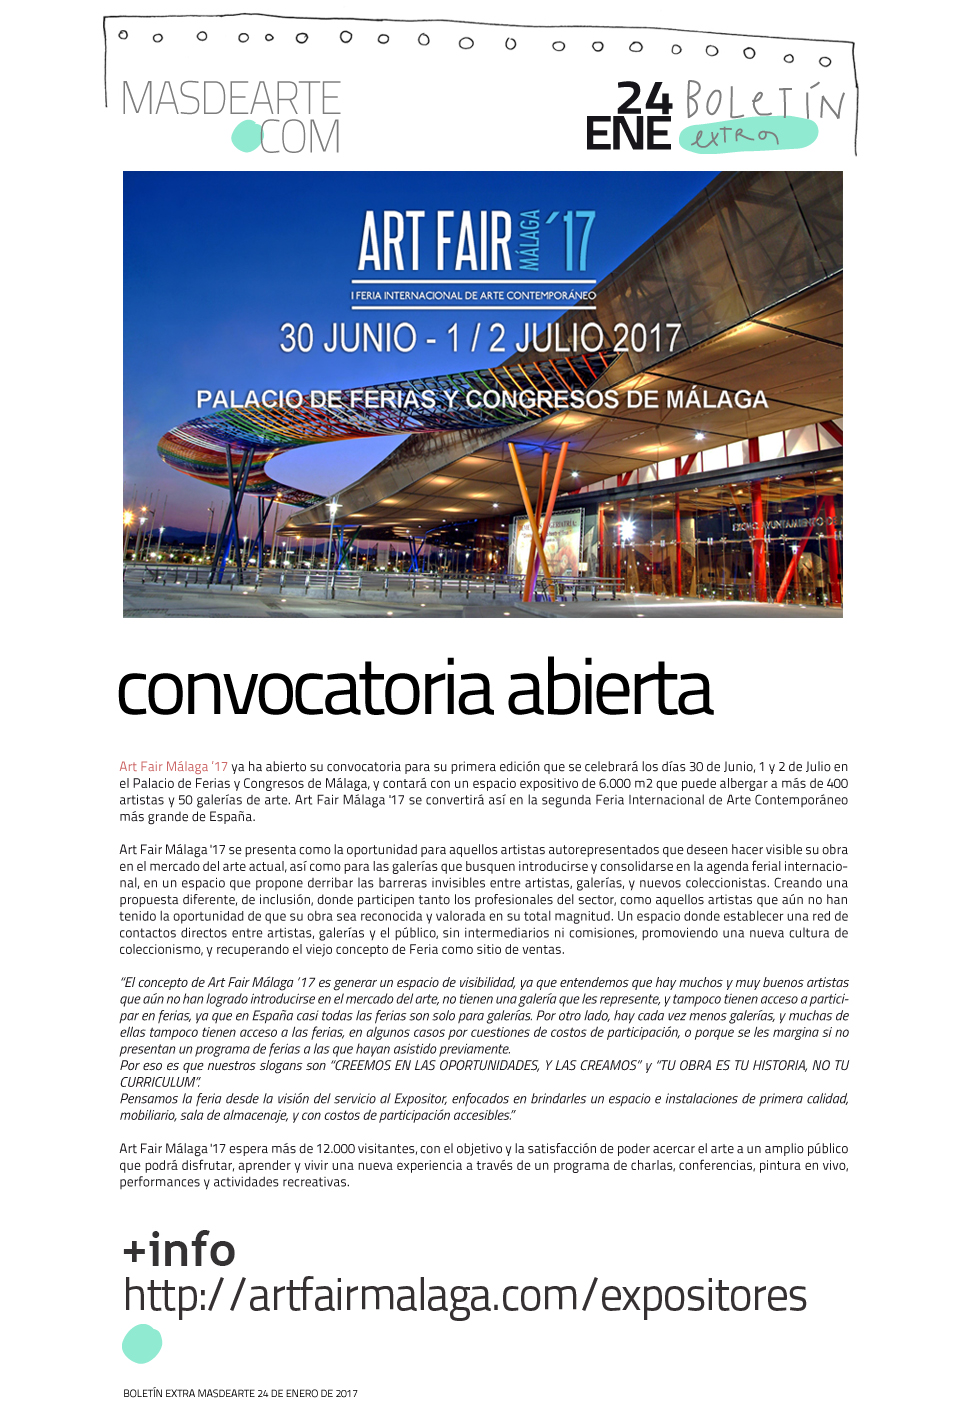 Art Fair Málaga junio/julio 2017. Abierta la convocatoria para que artistas
 sin galería y galerías soliciten su participación en esta feria internacional de arte contemporáneo